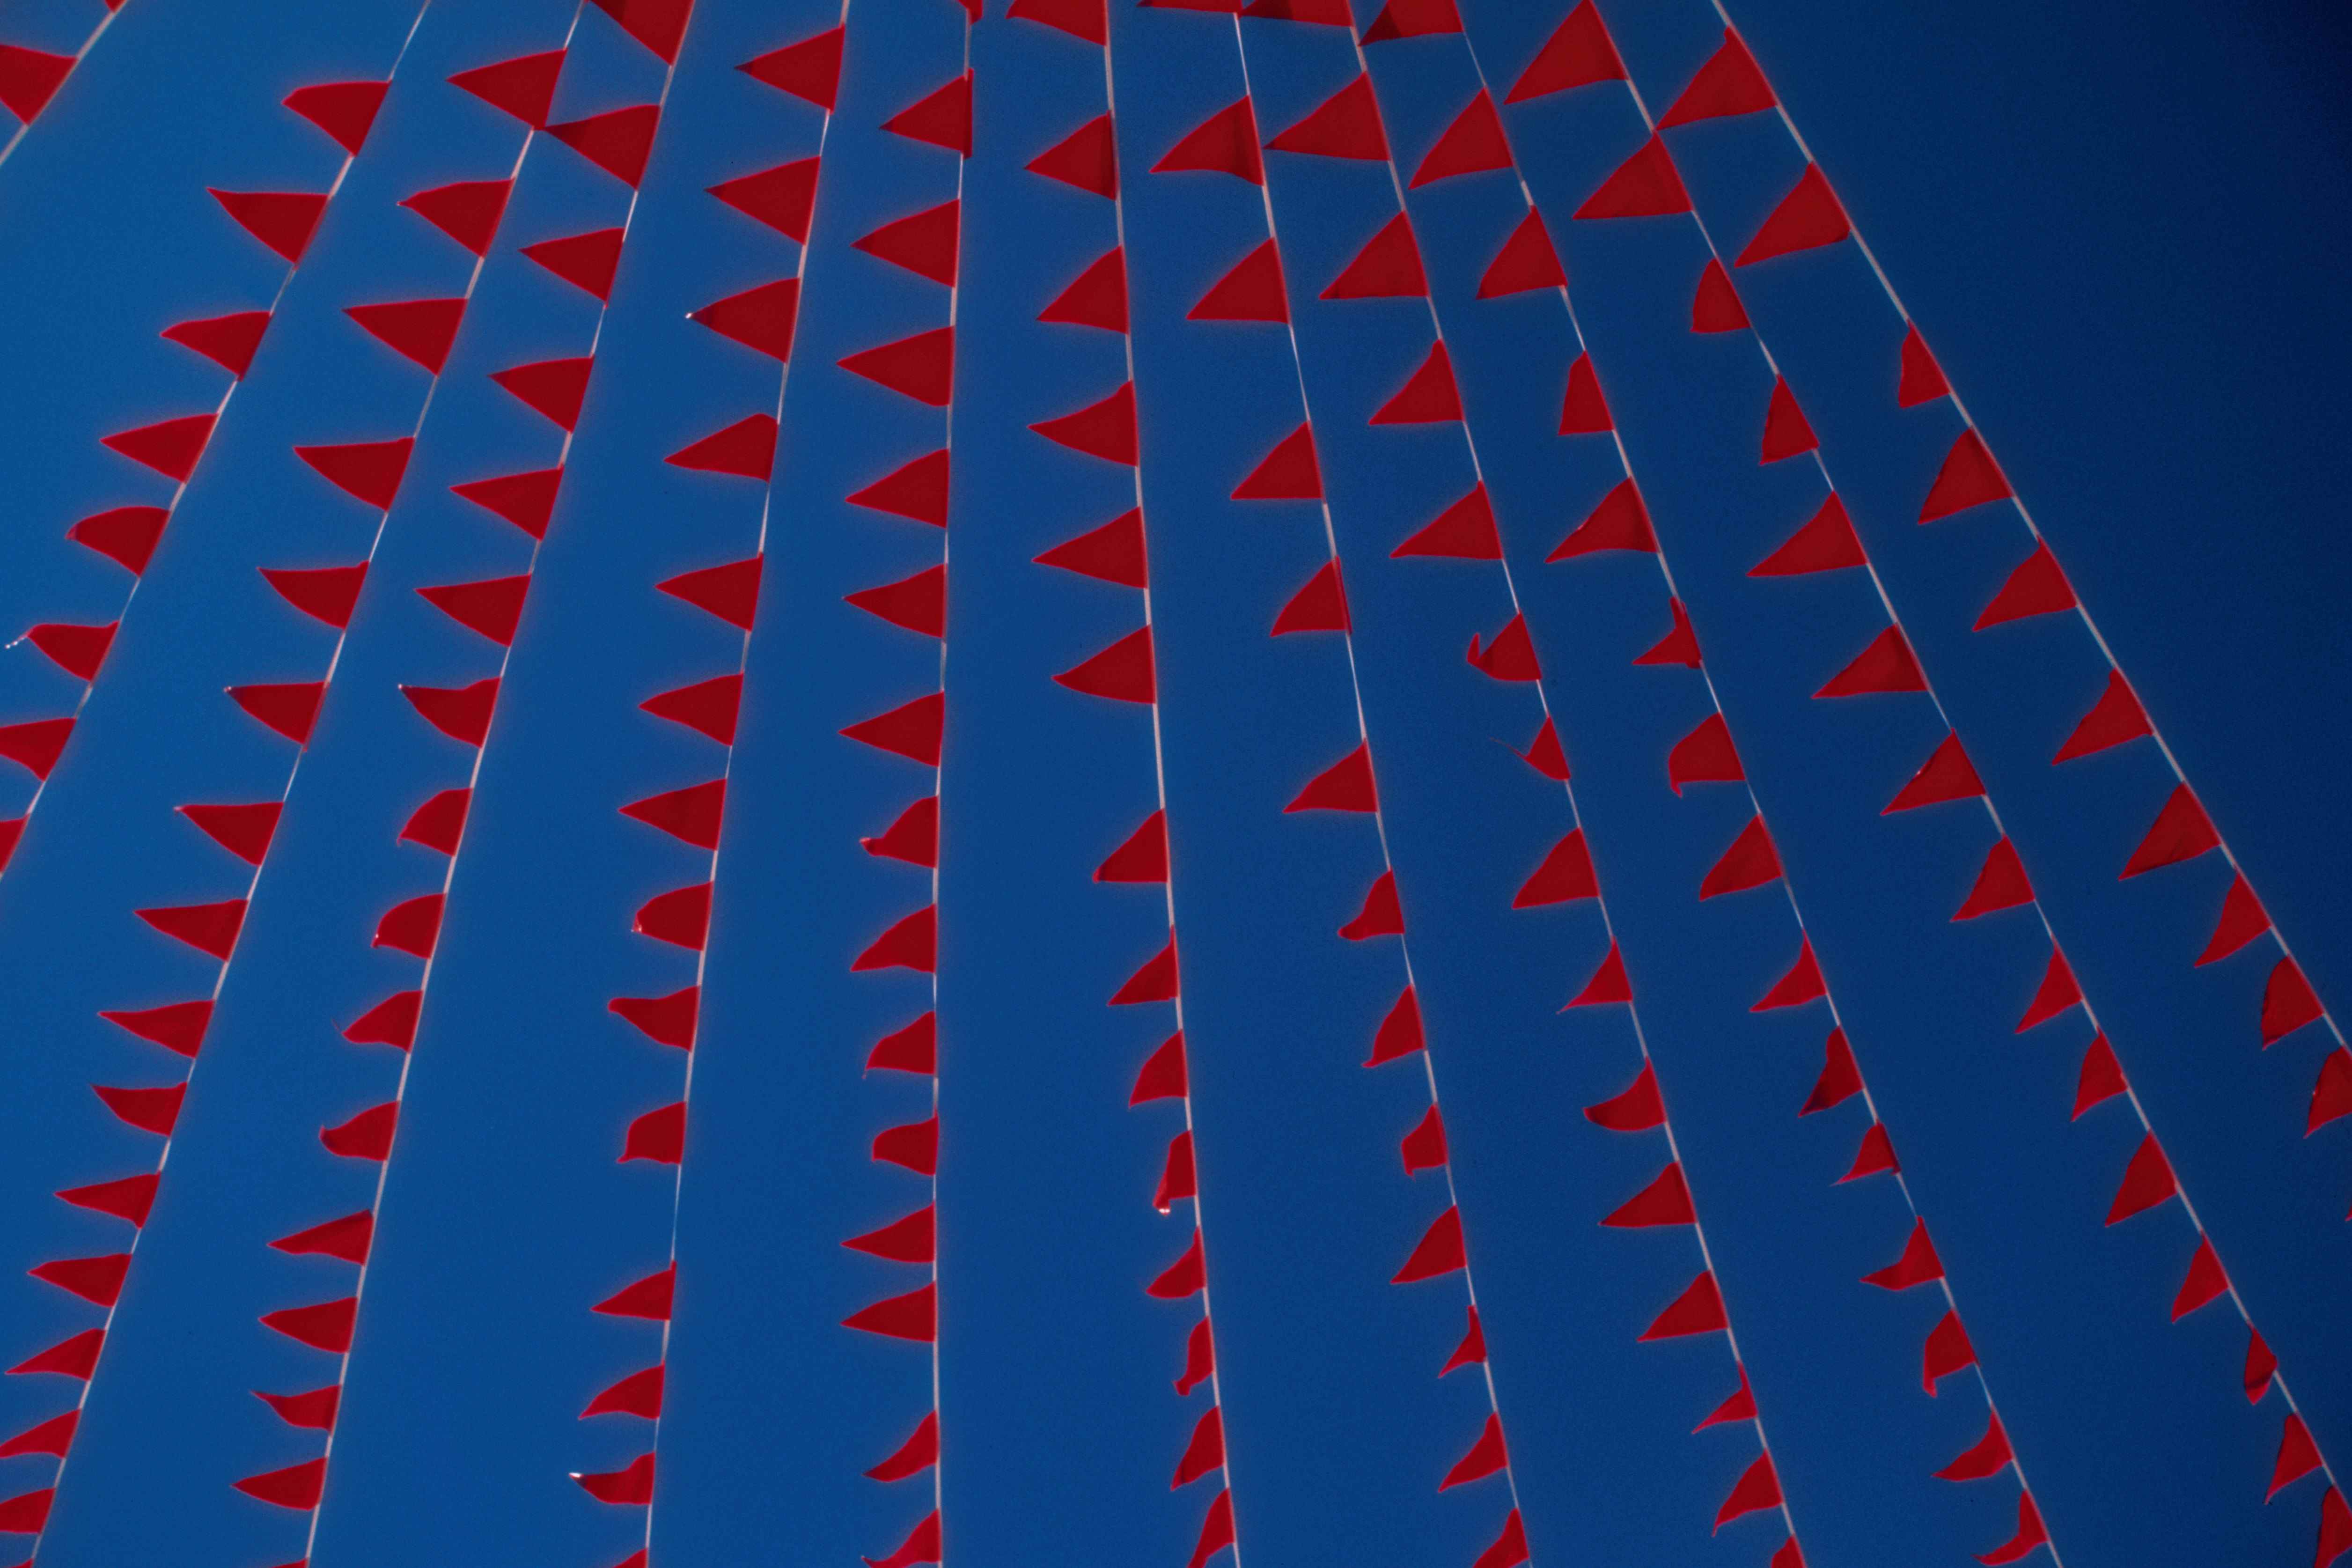 Image de drapeaux rouges contre un ciel bleu.